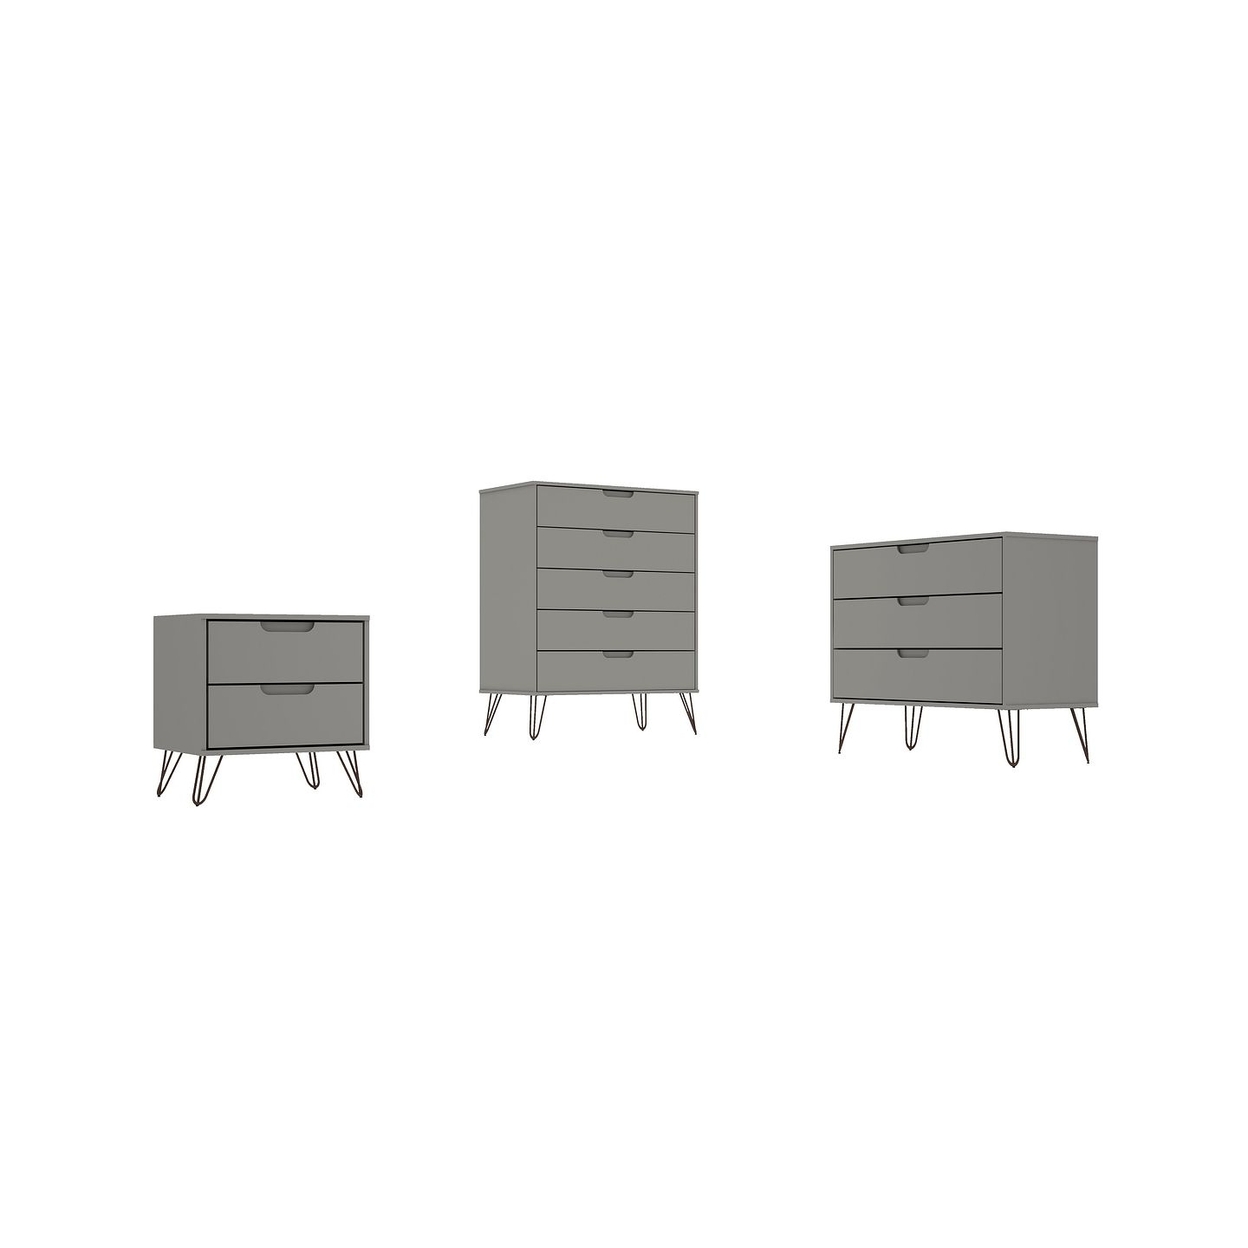 Rockefeller 3-Piece Dresser and Nightstand Set - image 1 of 3